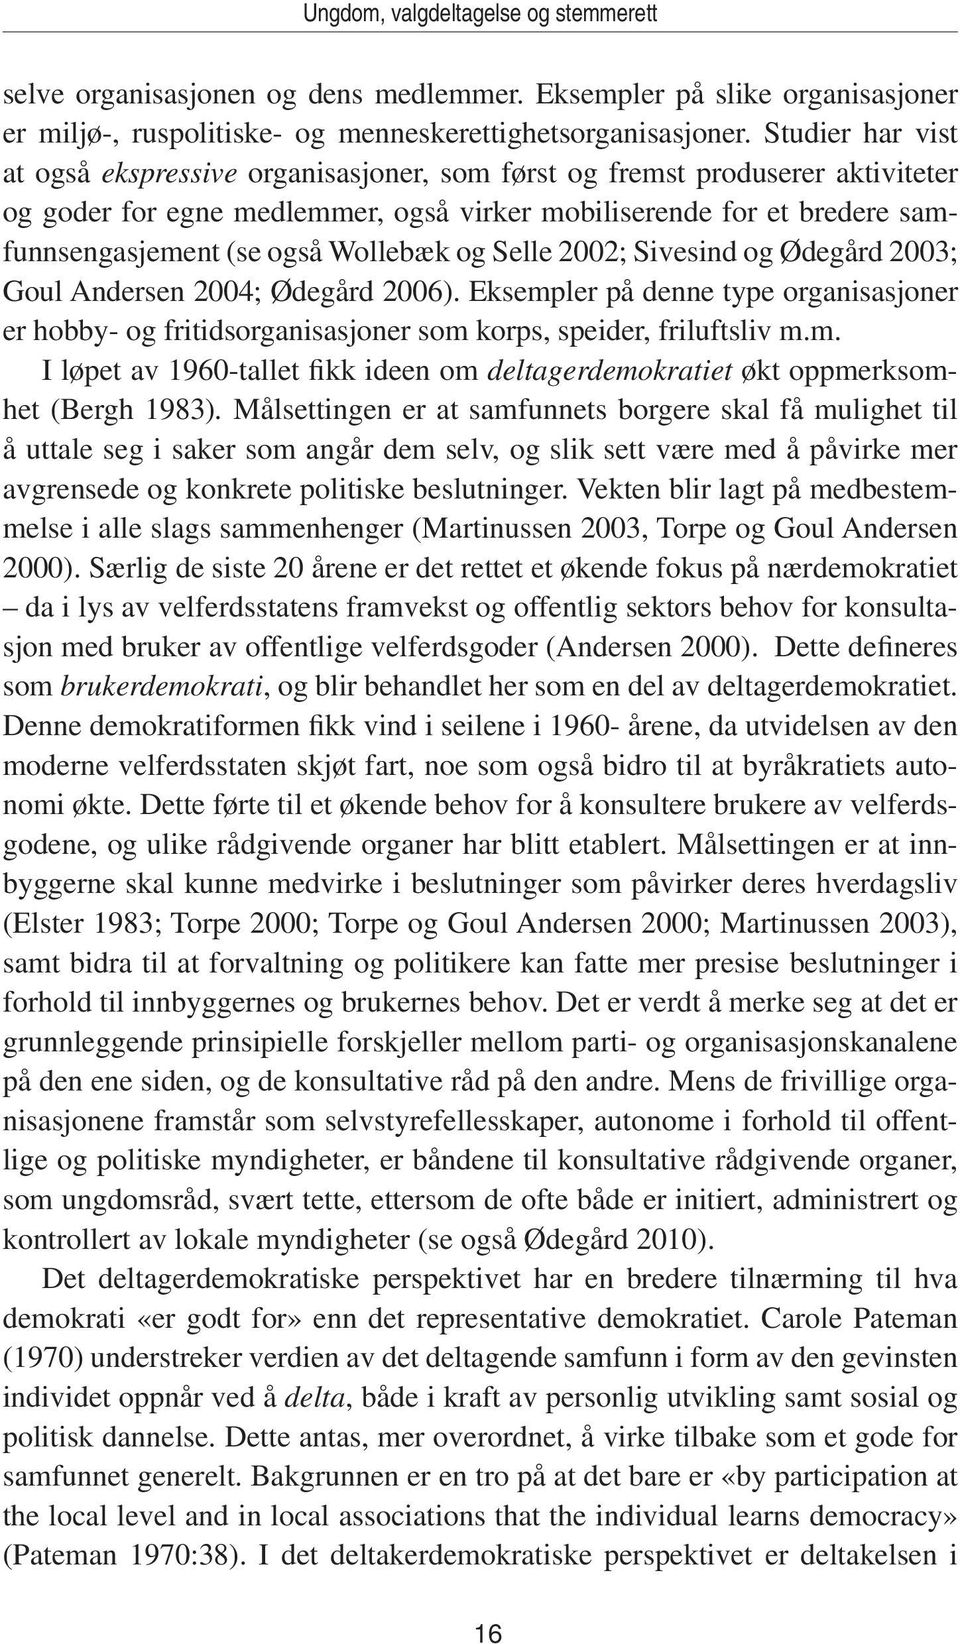 Wollebæk og Selle 2002; Sivesind og Ødegård 2003; Goul Andersen 2004; Ødegård 2006). Eksempler på denne type organisasjoner er hobby- og fritidsorganisasjoner som korps, speider, friluftsliv m.m. I løpet av 1960-tallet fikk ideen om deltagerdemokratiet økt oppmerksomhet (Bergh 1983).